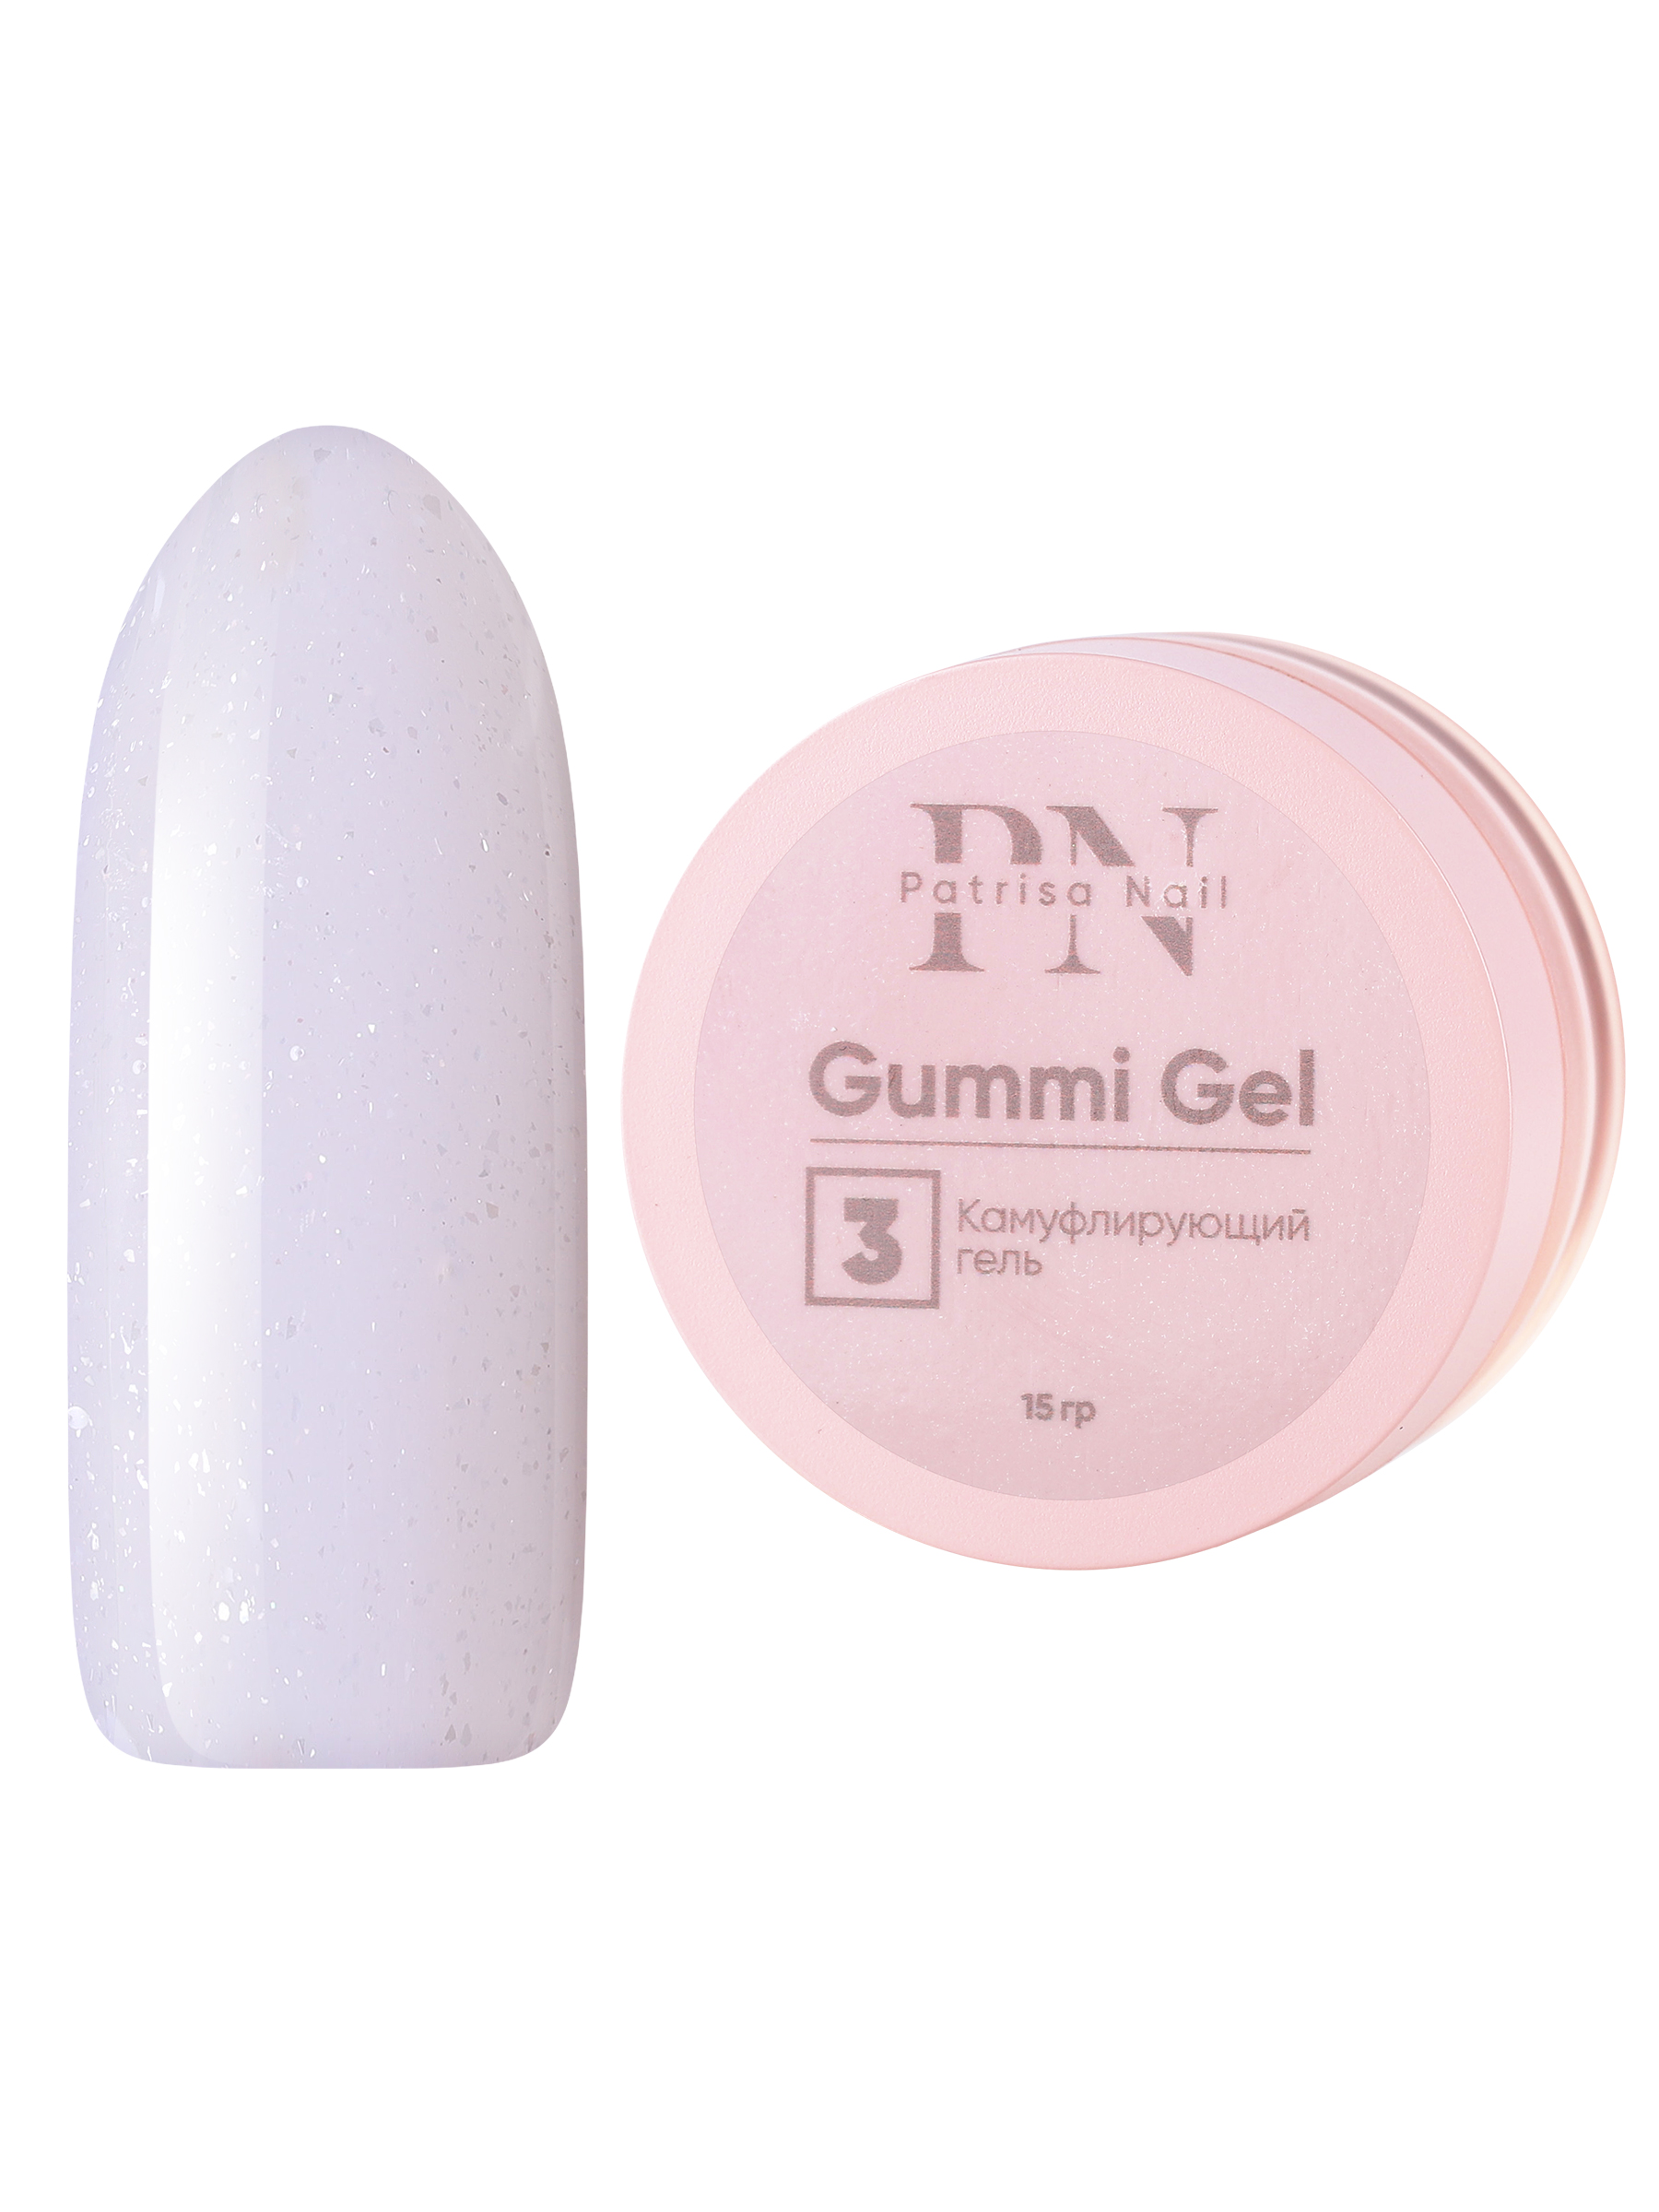 Камуфлирующий гель Patrisa nail Gummi Gel №3 высокой вязкости 15 г